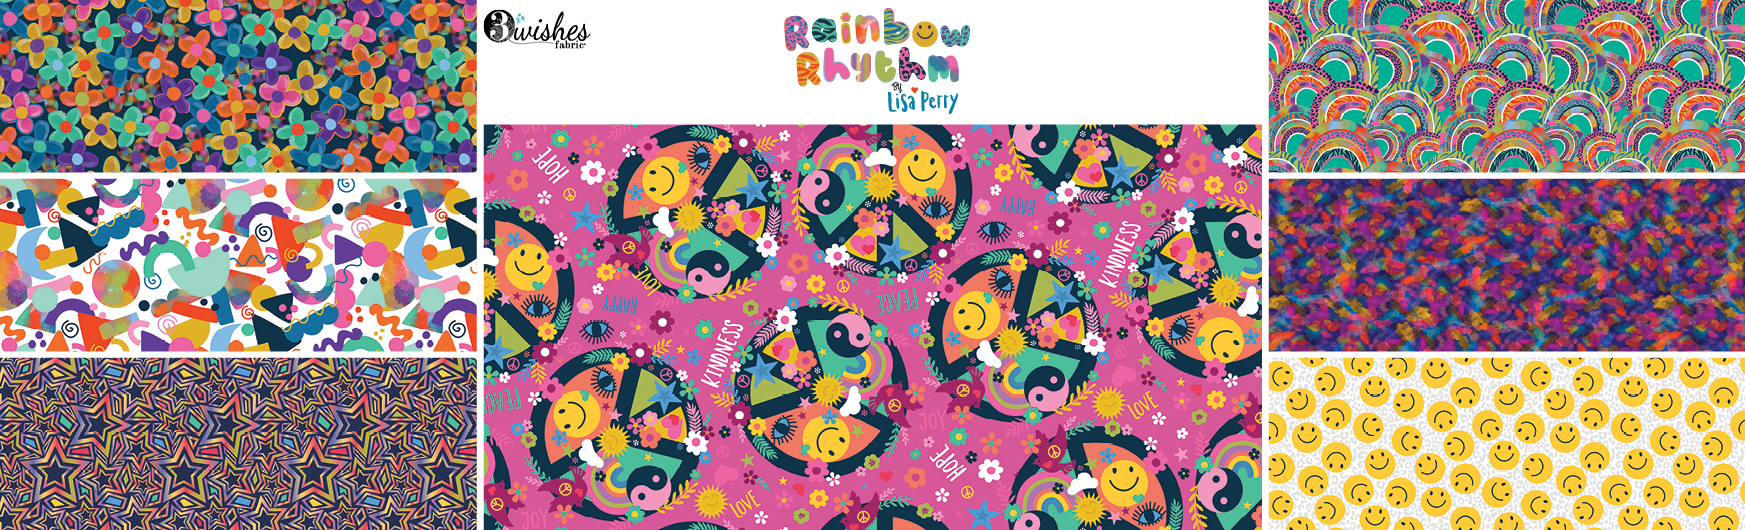 Rainbow Rhythm